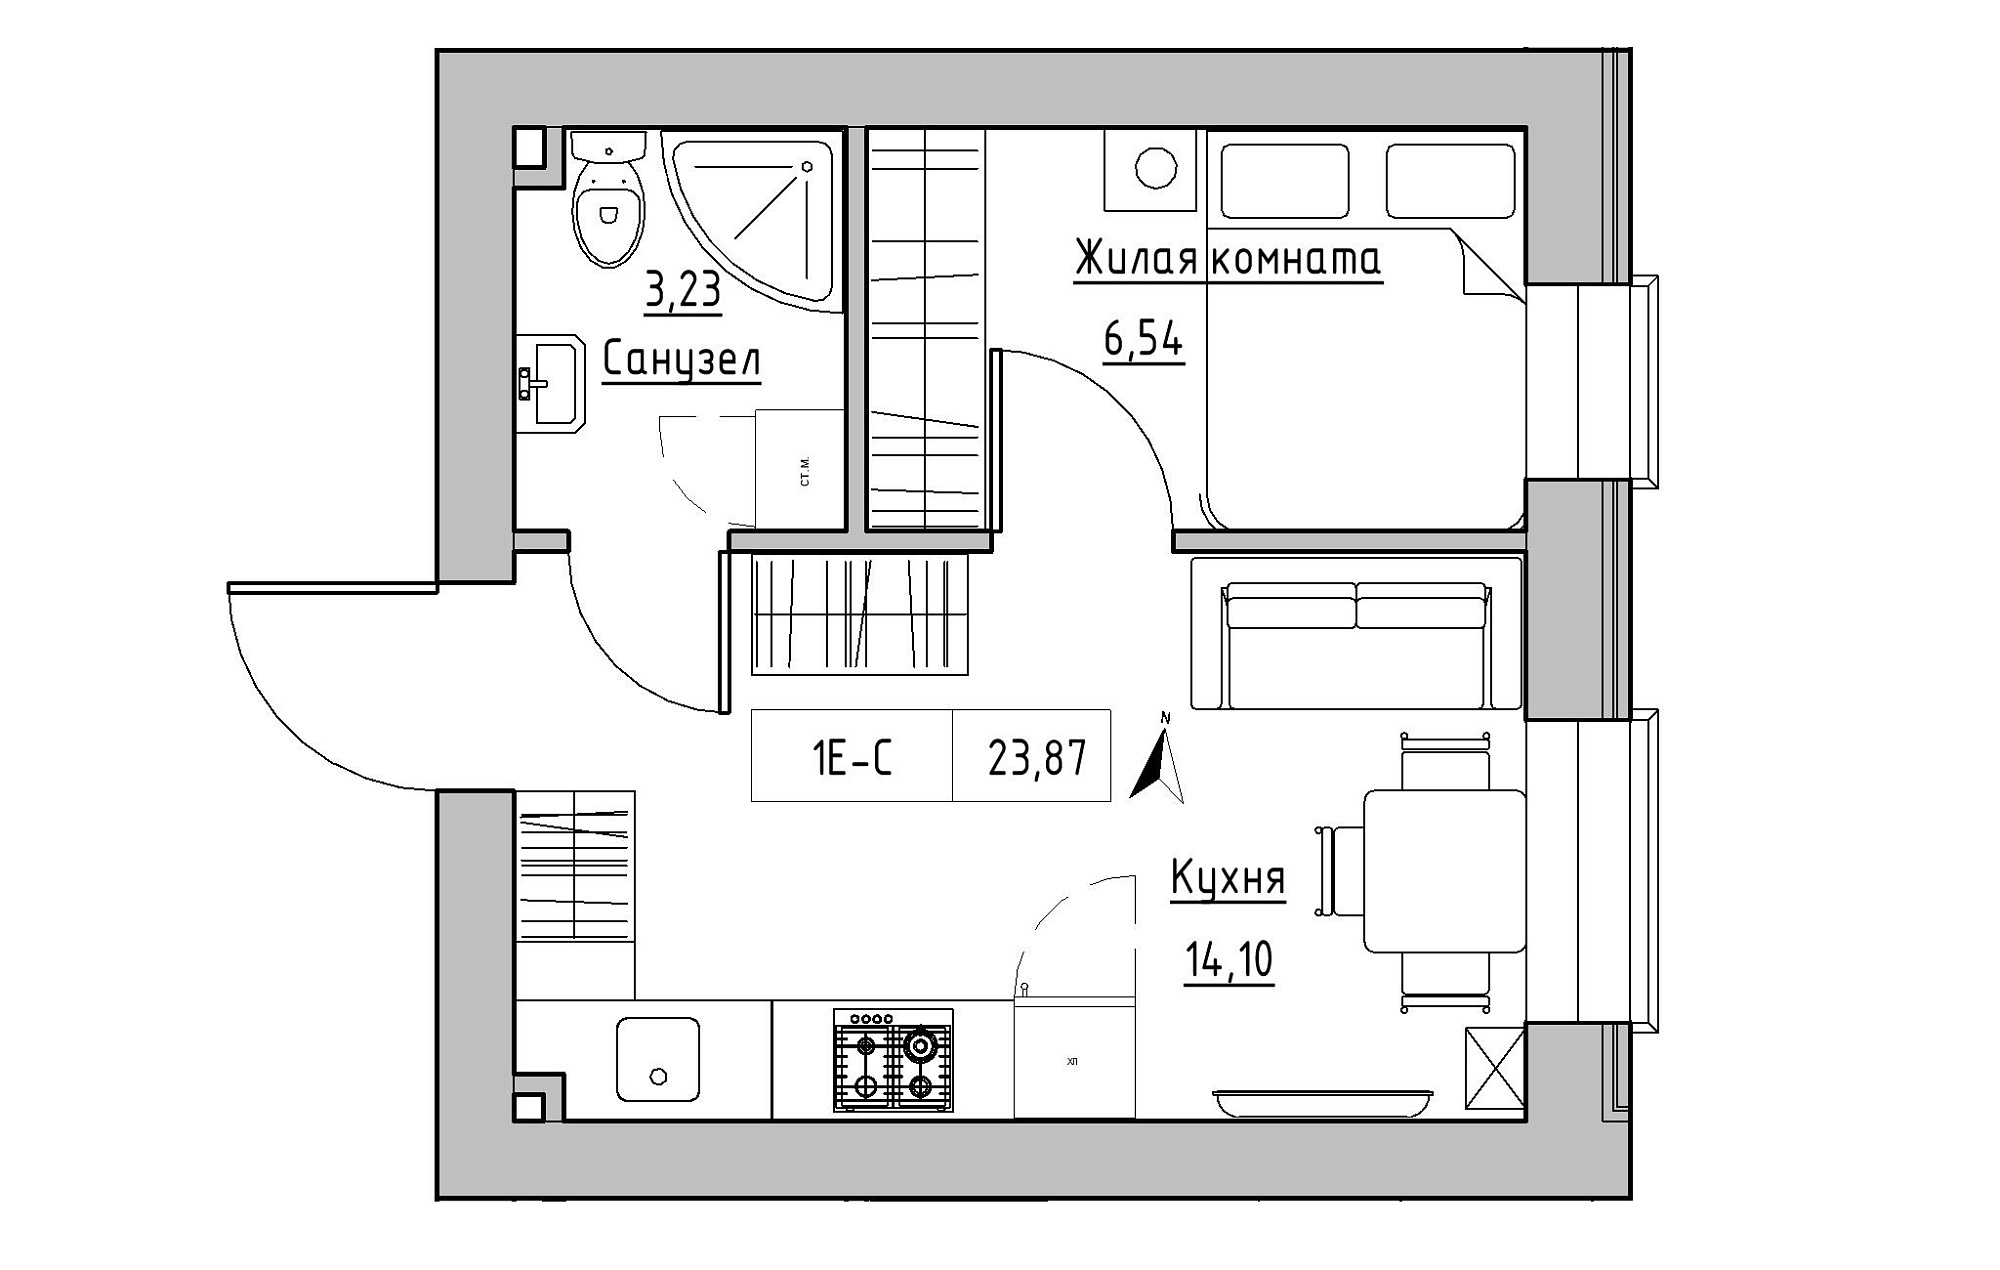 Планування 1-к квартира площею 23.87м2, KS-019-03/0004.